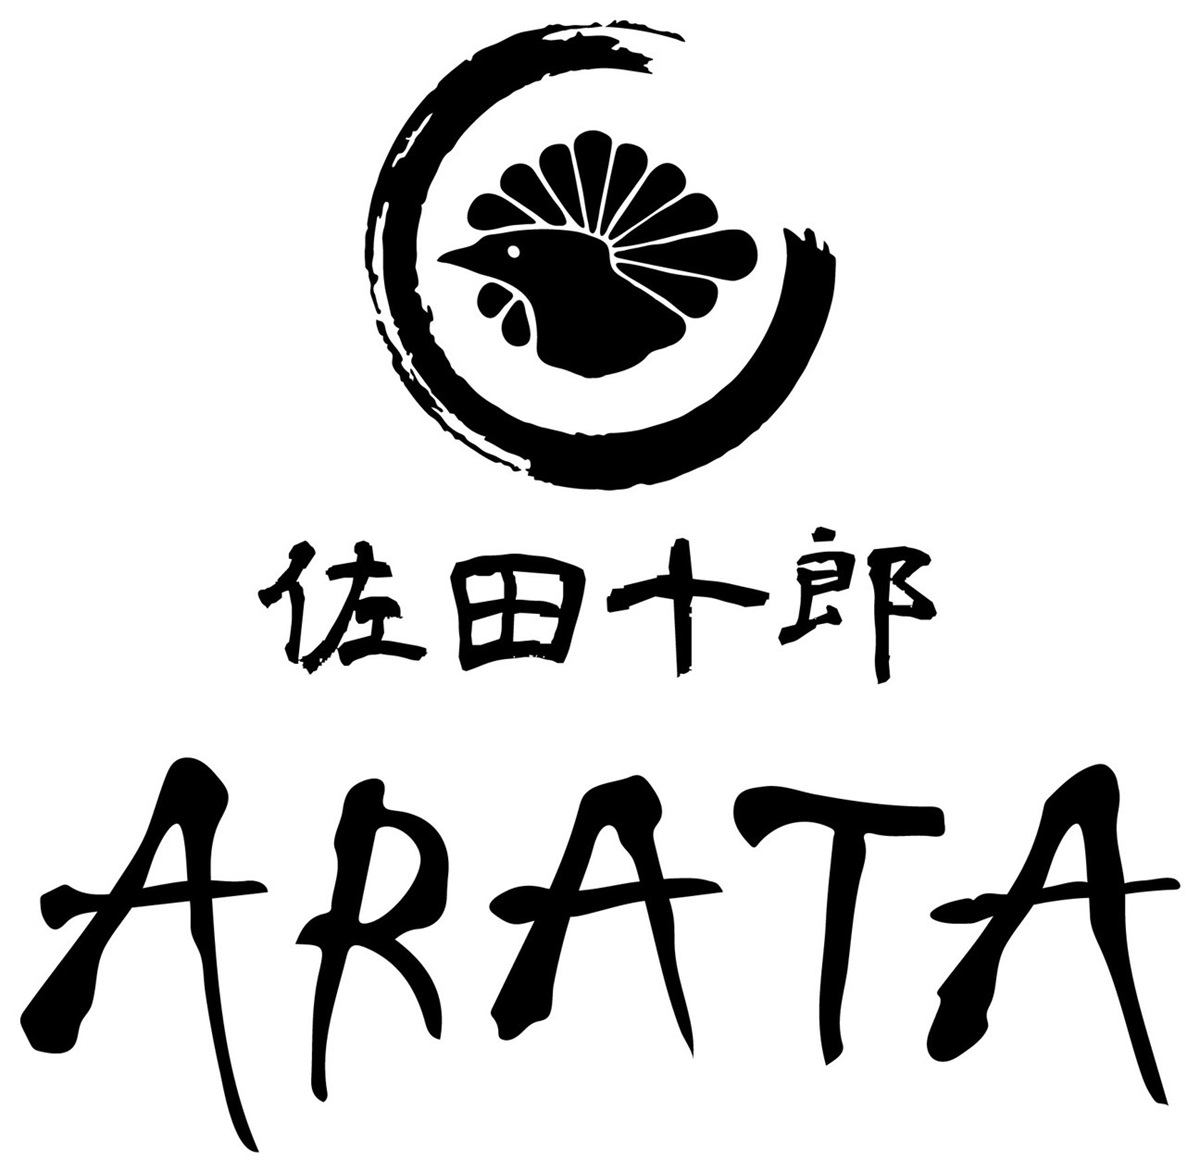 佐田十郎ARATAはリーズナブルに熟成鶏の焼鳥を提供